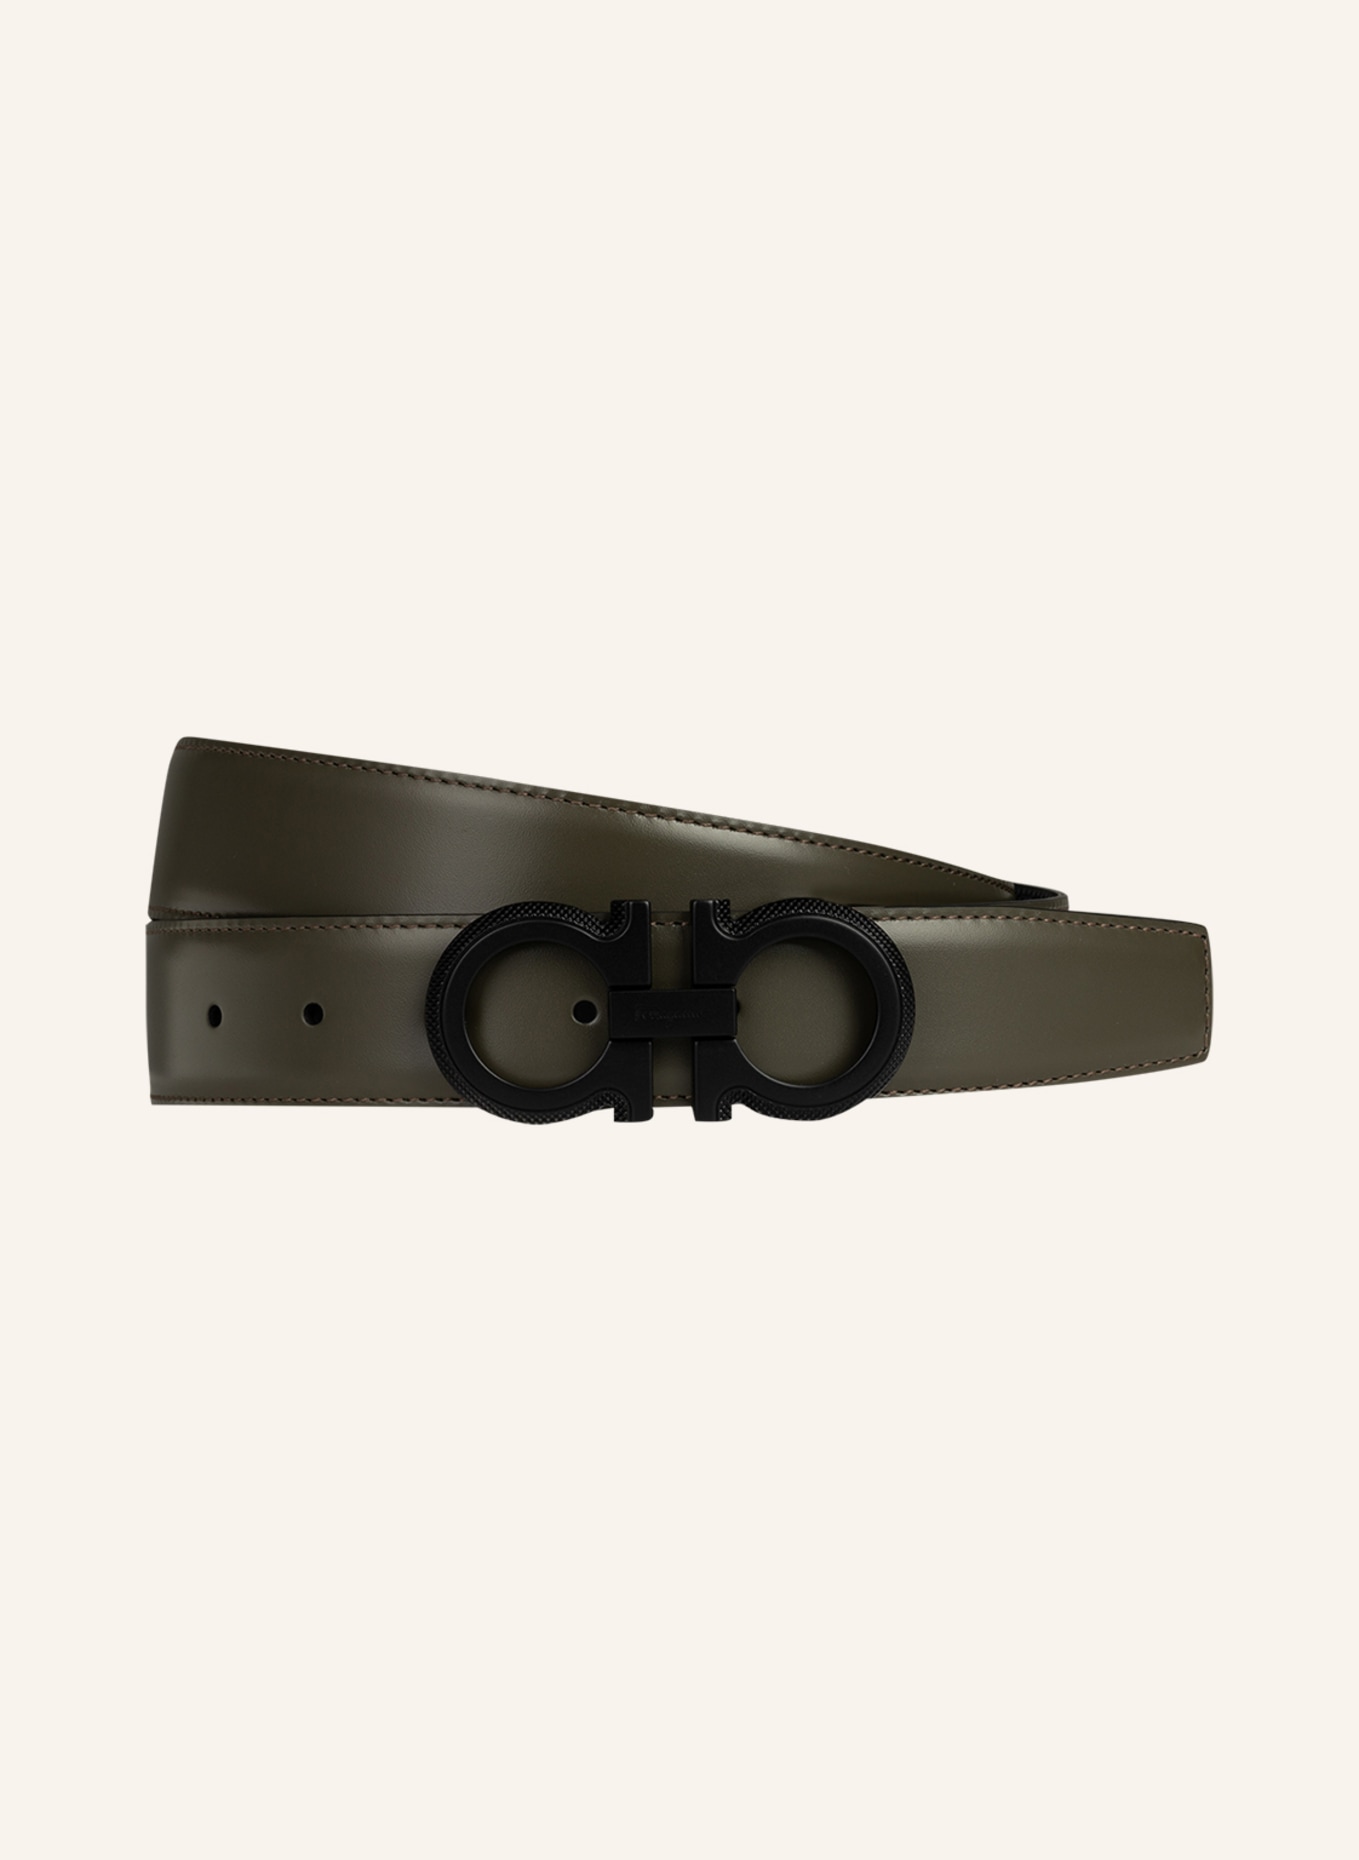 FERRAGAMO Leather belt, Color: OLIVE (Image 1)